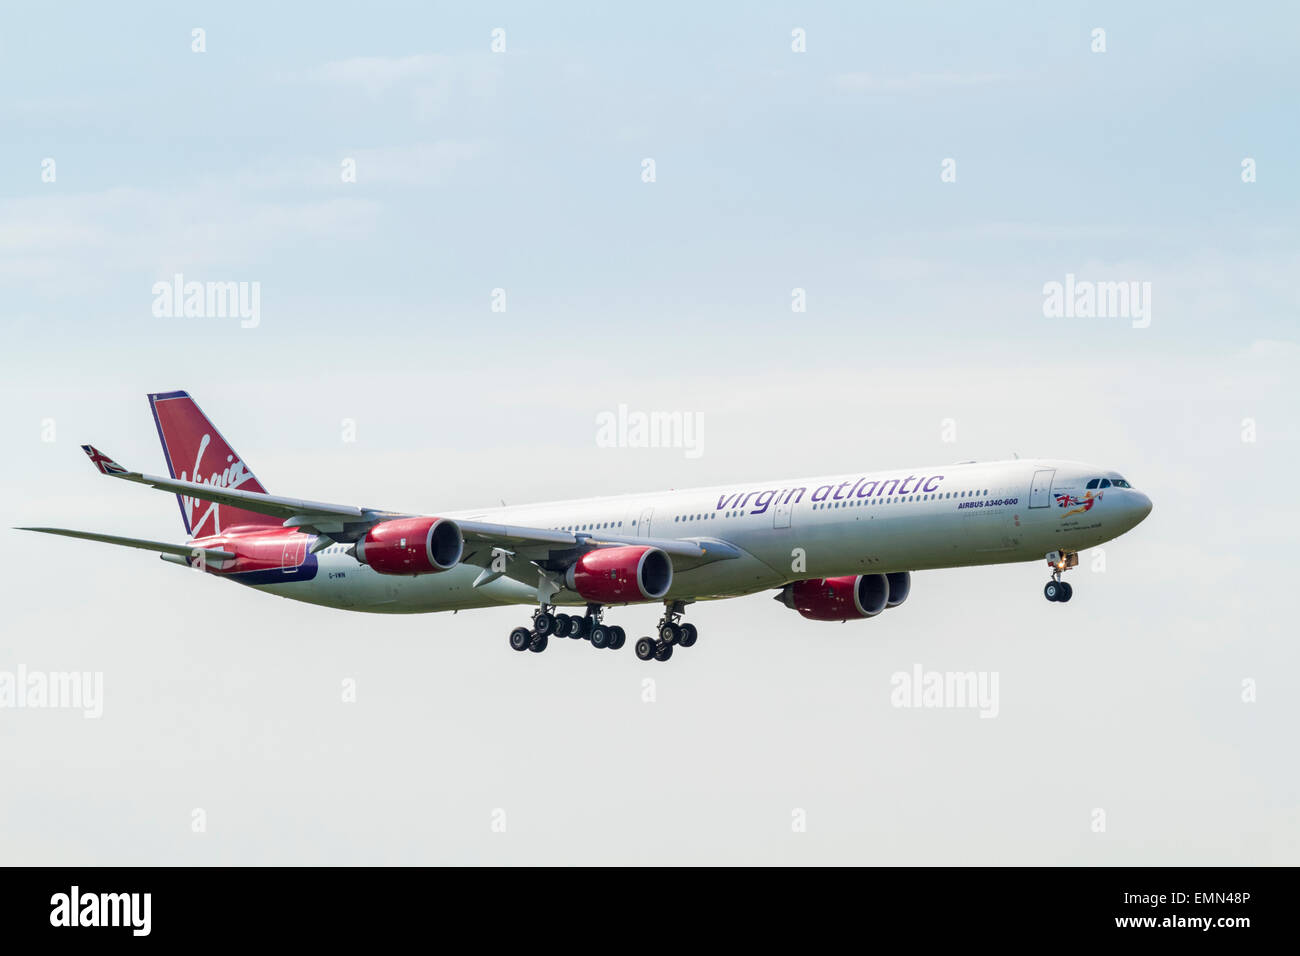 Virgin Atlantic avion Airbus A340-600, G-VWIN, nommée Dame Chance, arrivant sur la terre. Banque D'Images